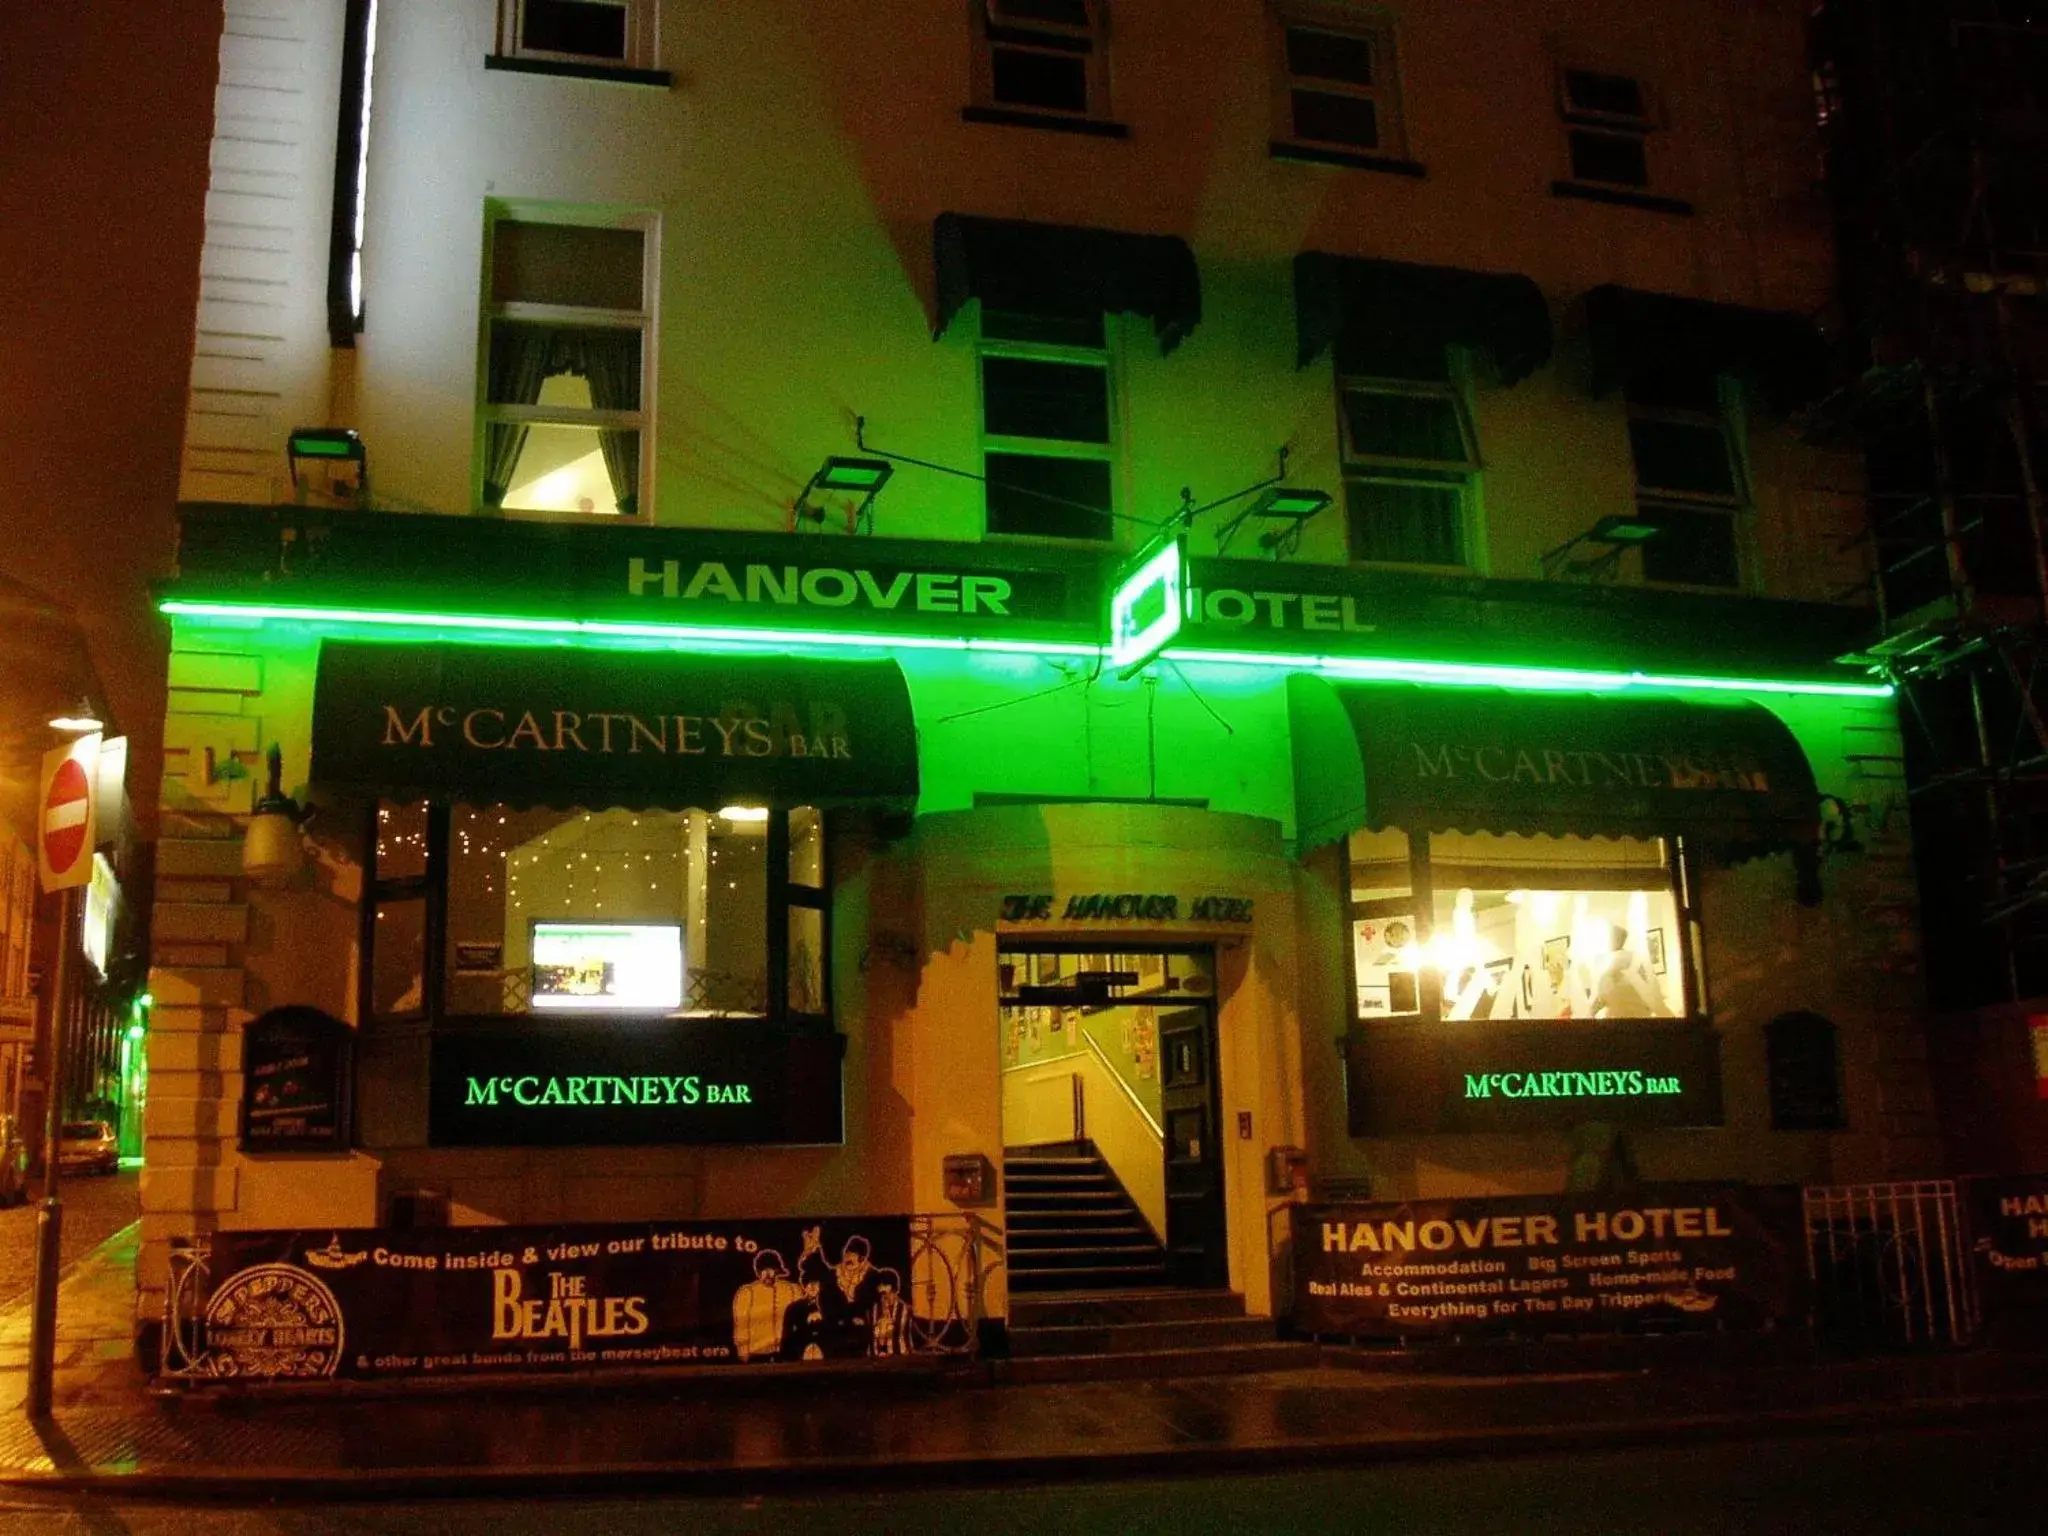 Facade/entrance, Property Building in Hanover Hotel & McCartney's Bar